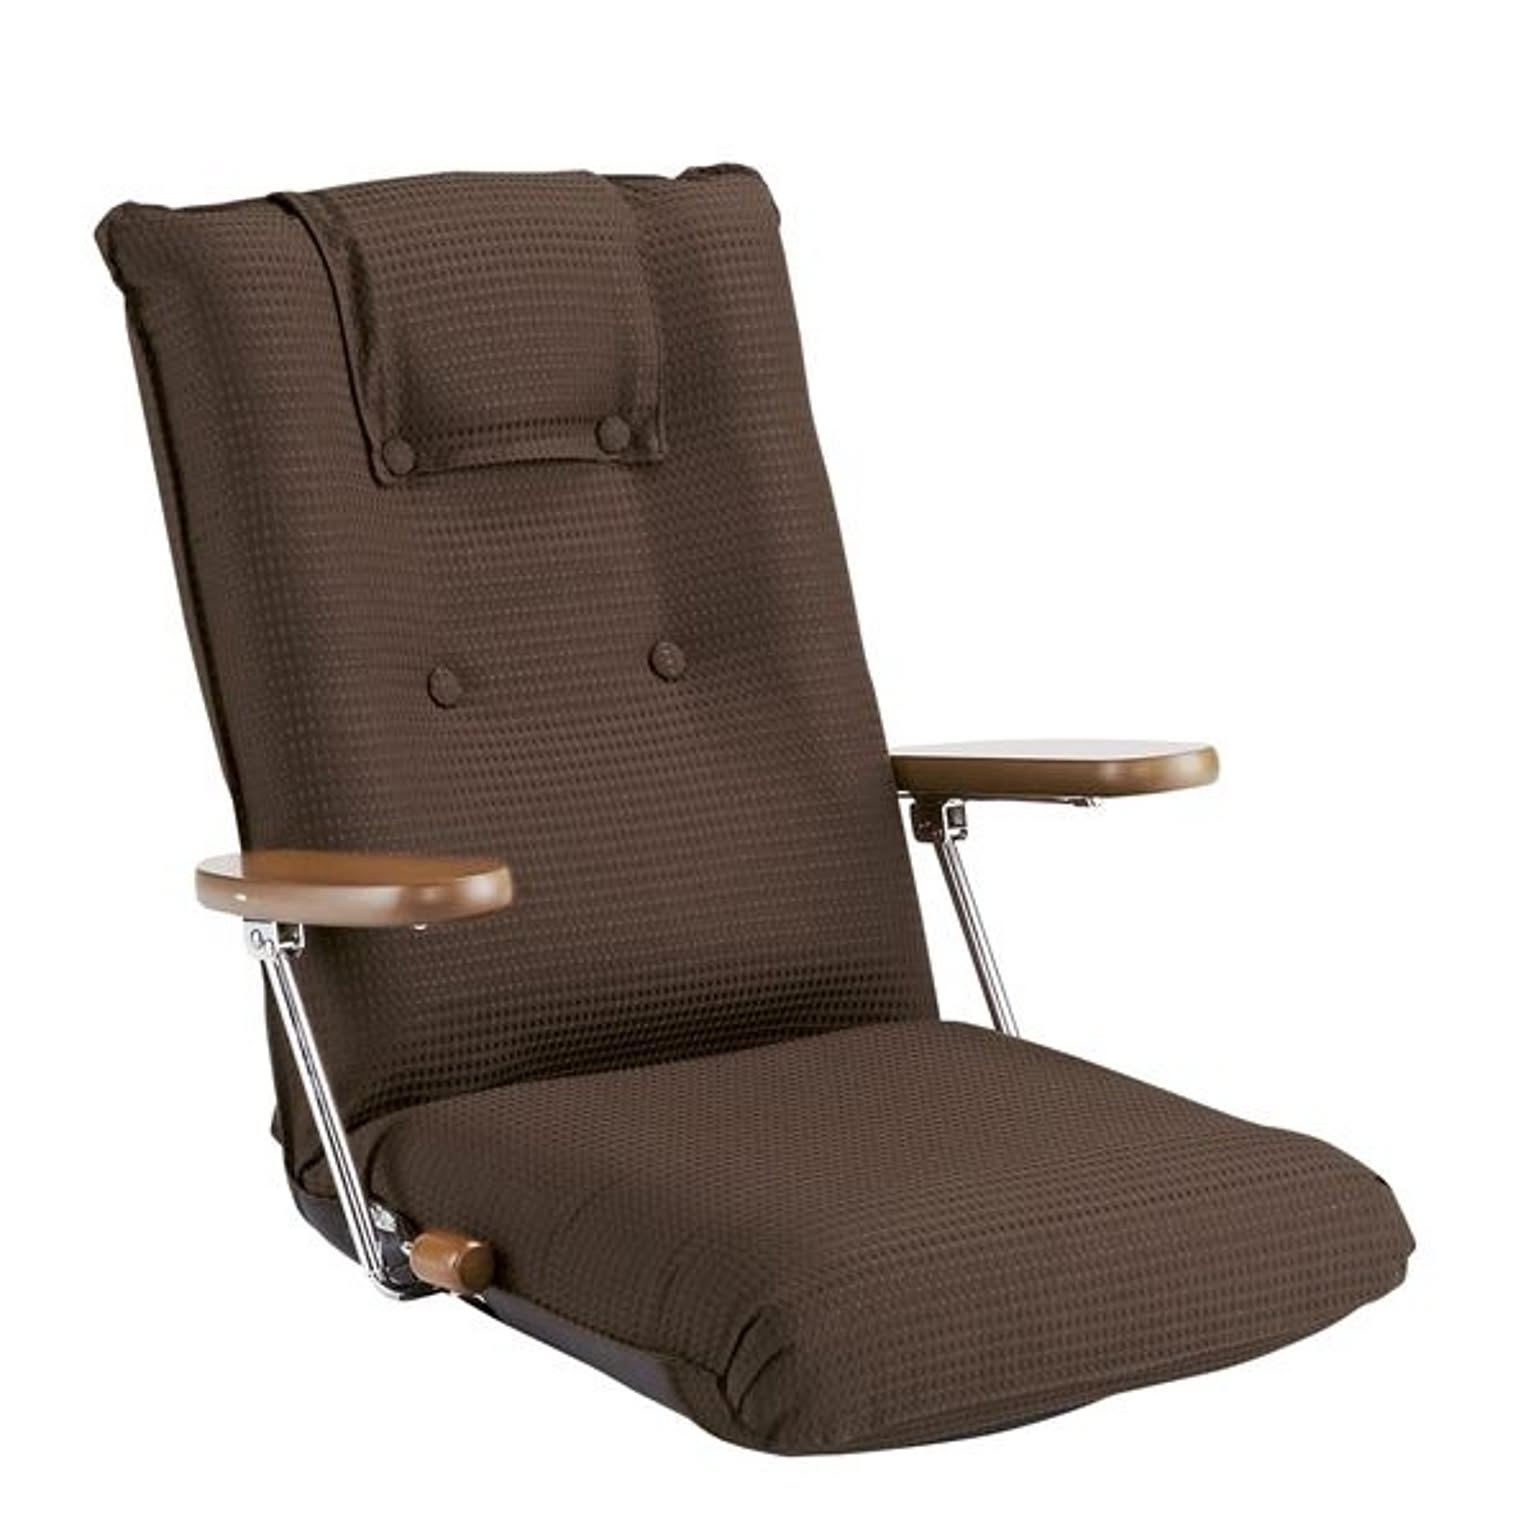 ハイバック座椅子(リクライニングチェア) 肘付き/ポンプ肘式 転倒防止機構採用 日本製 ブラウン 【完成品】